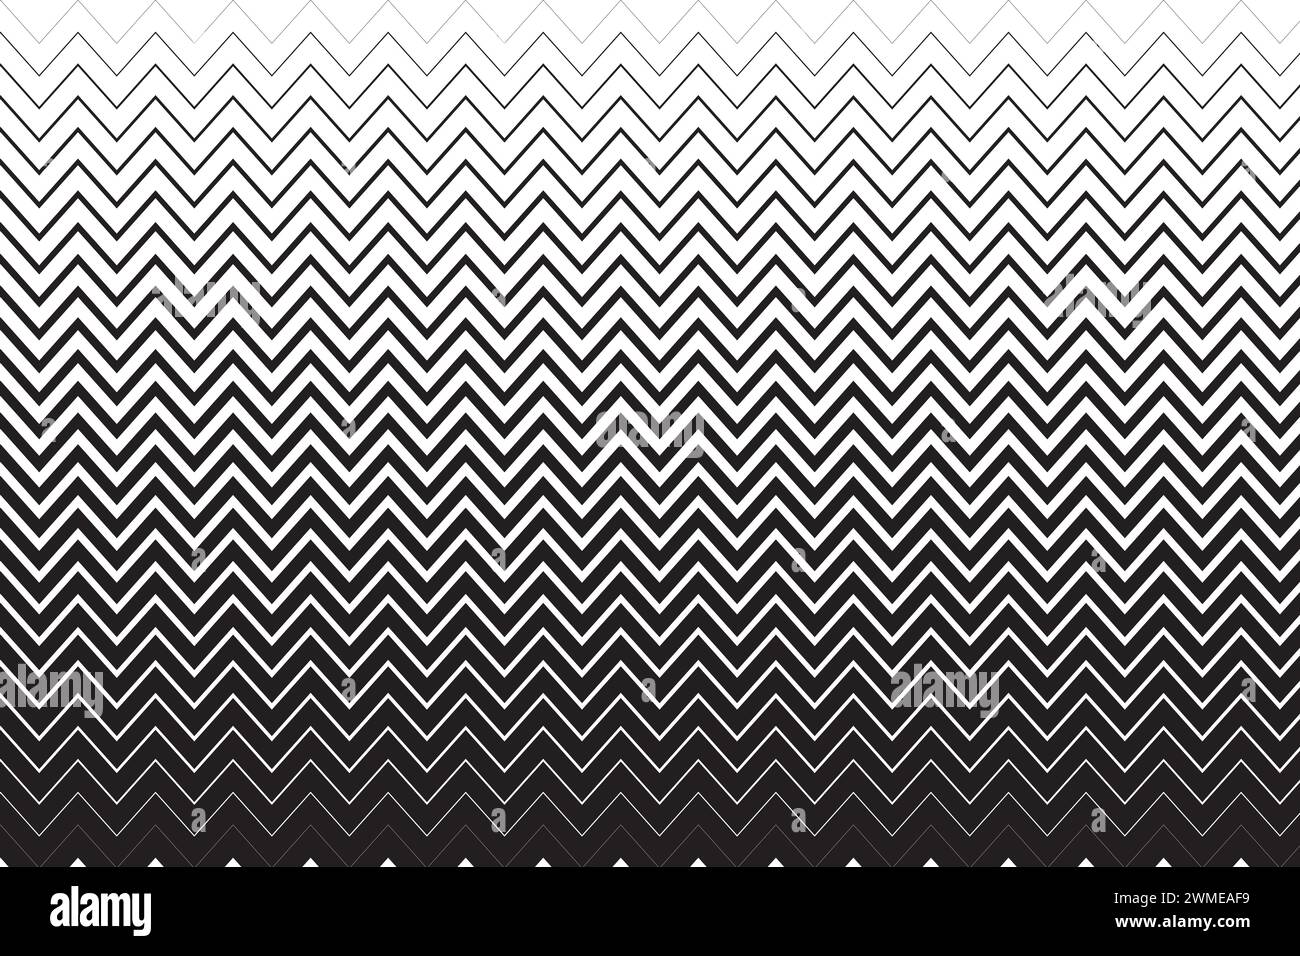 Horizontale parallele Zickzacklinien unterschiedlicher Dicke. Schwarz-weißer Zick-Zack-Streifen Hintergrund. Gewellte, gezackte Wellenstruktur Stock Vektor